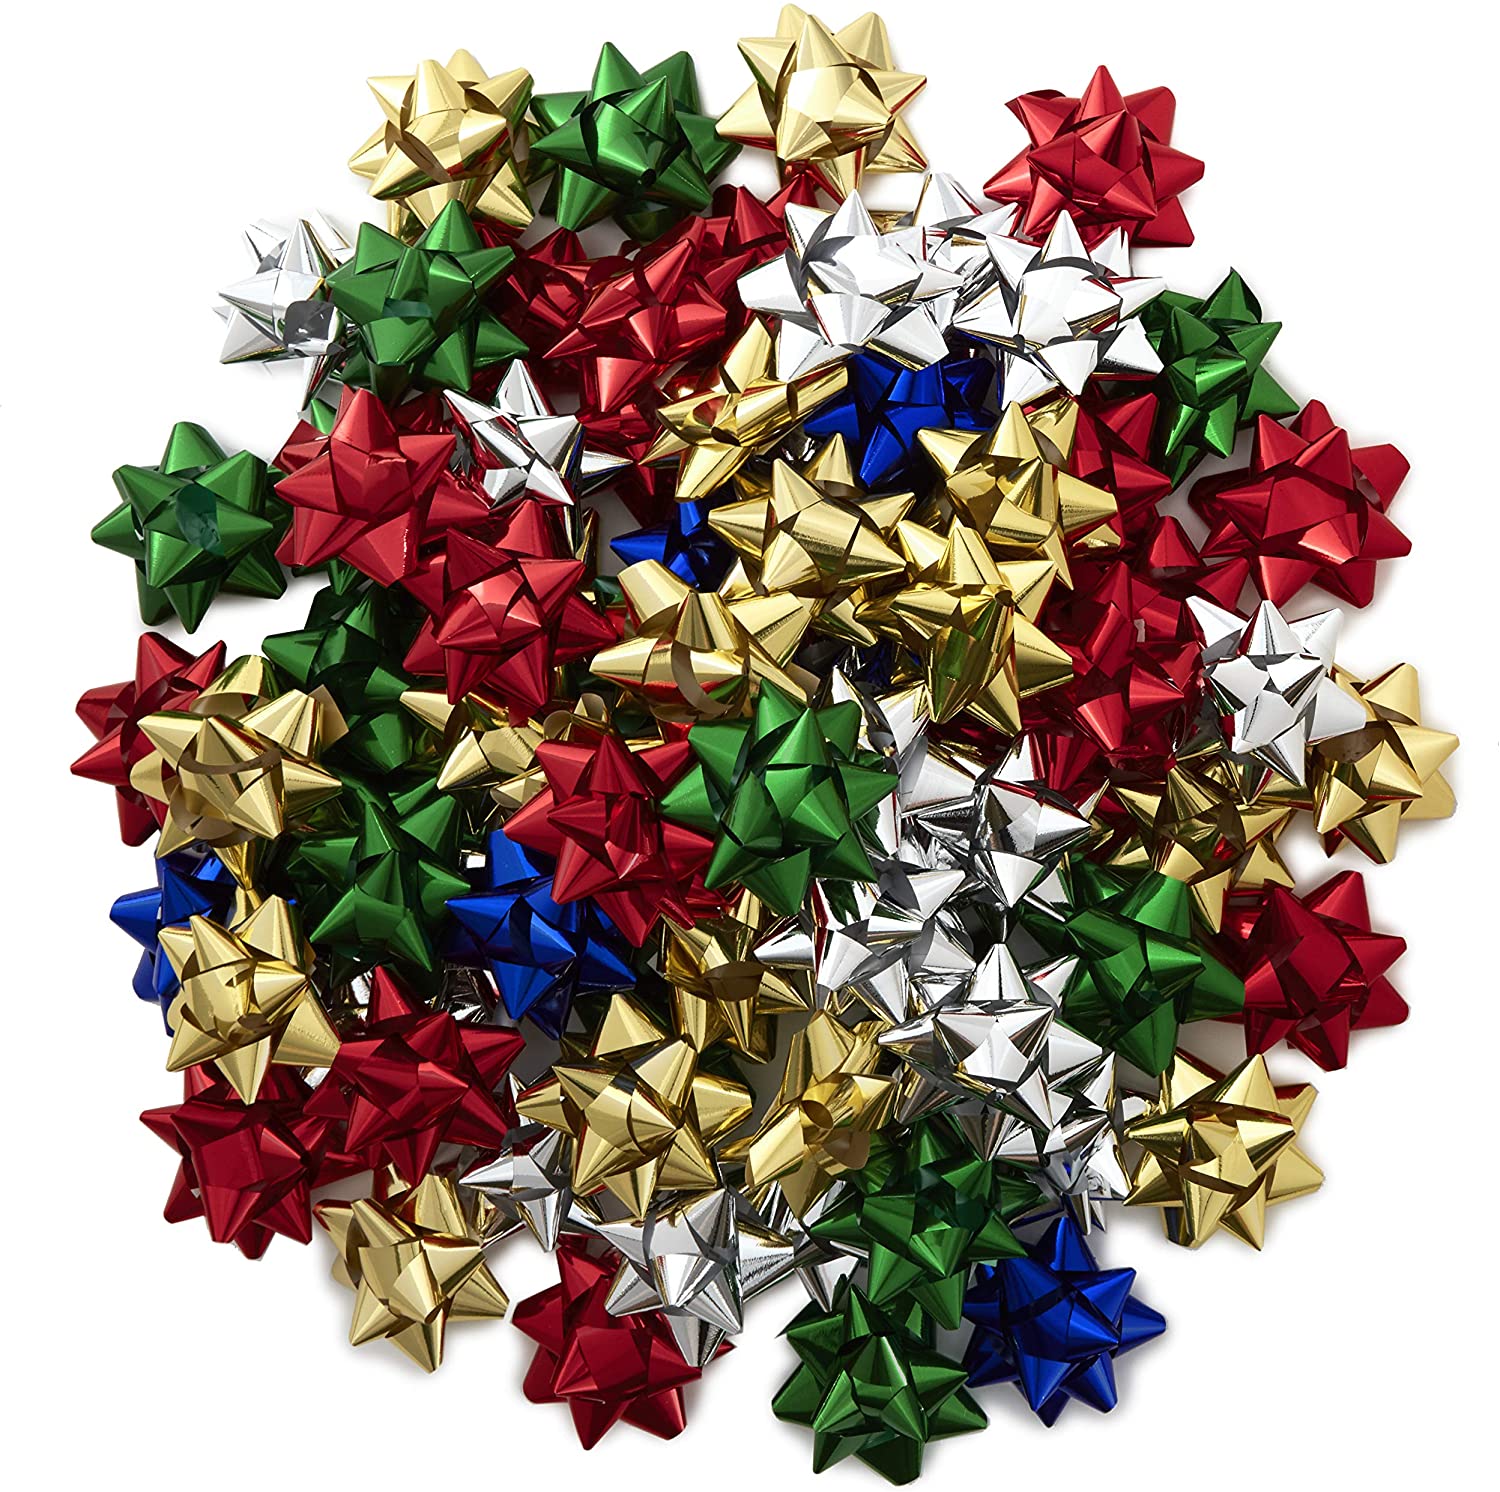 Hallmark假日3“弓组合（75弓；传统的节日颜色），用于圣诞节礼物